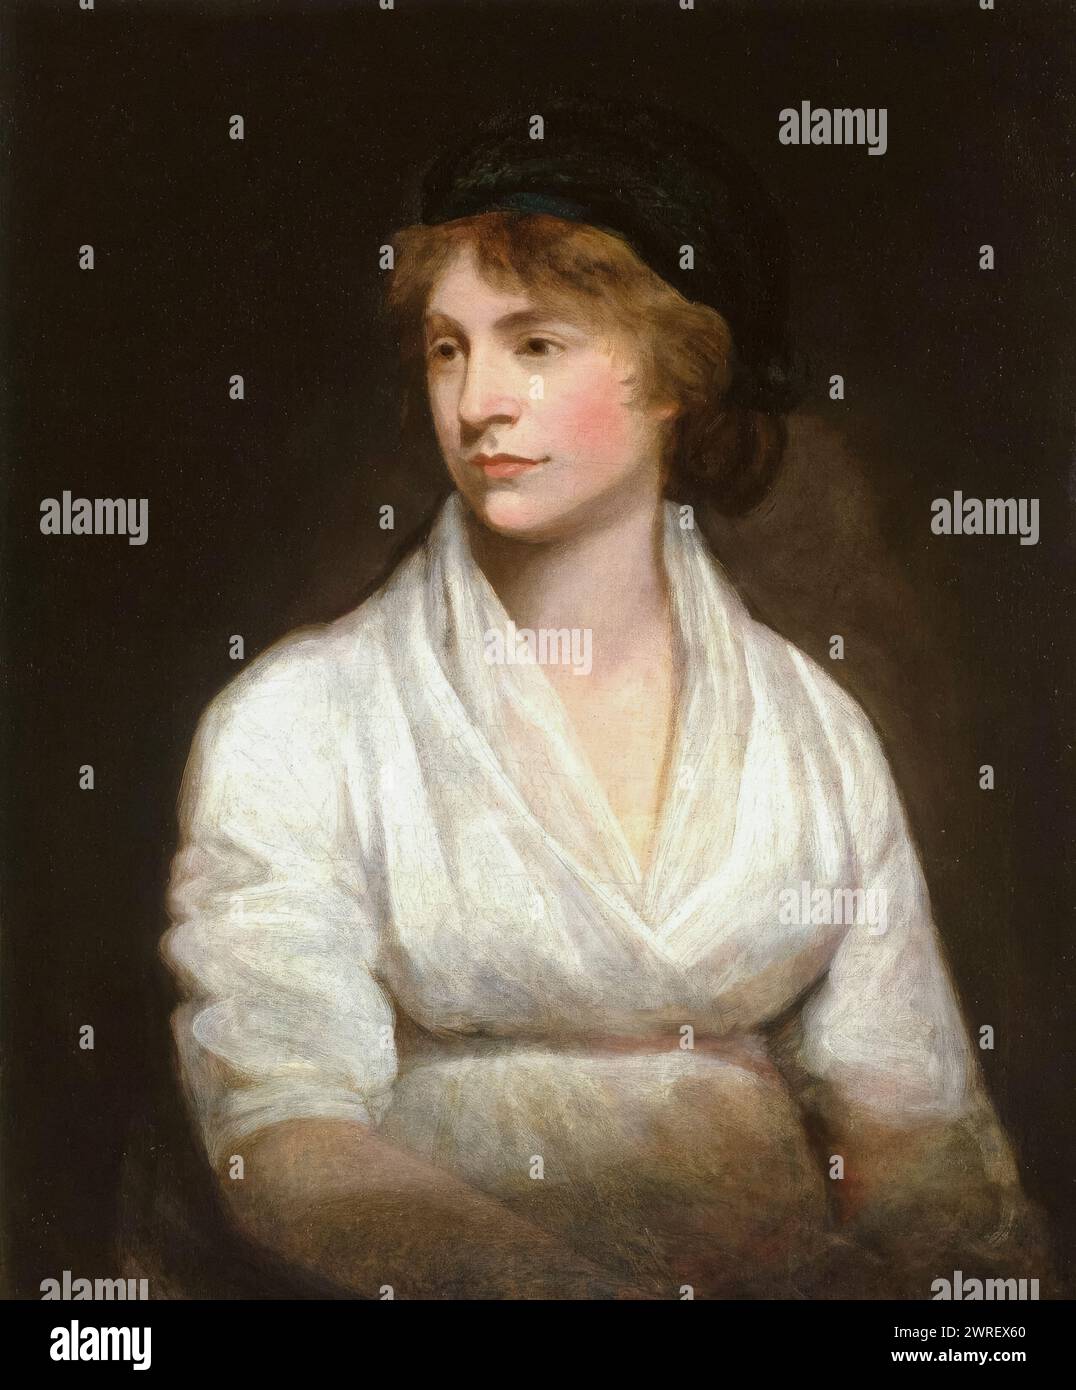 Mary Wollstonecraft (1759-1797), écrivain britannique, philosophe et avocate du suffrage féminin, portrait peint à l'huile sur toile par John Opie, vers 1797 Banque D'Images